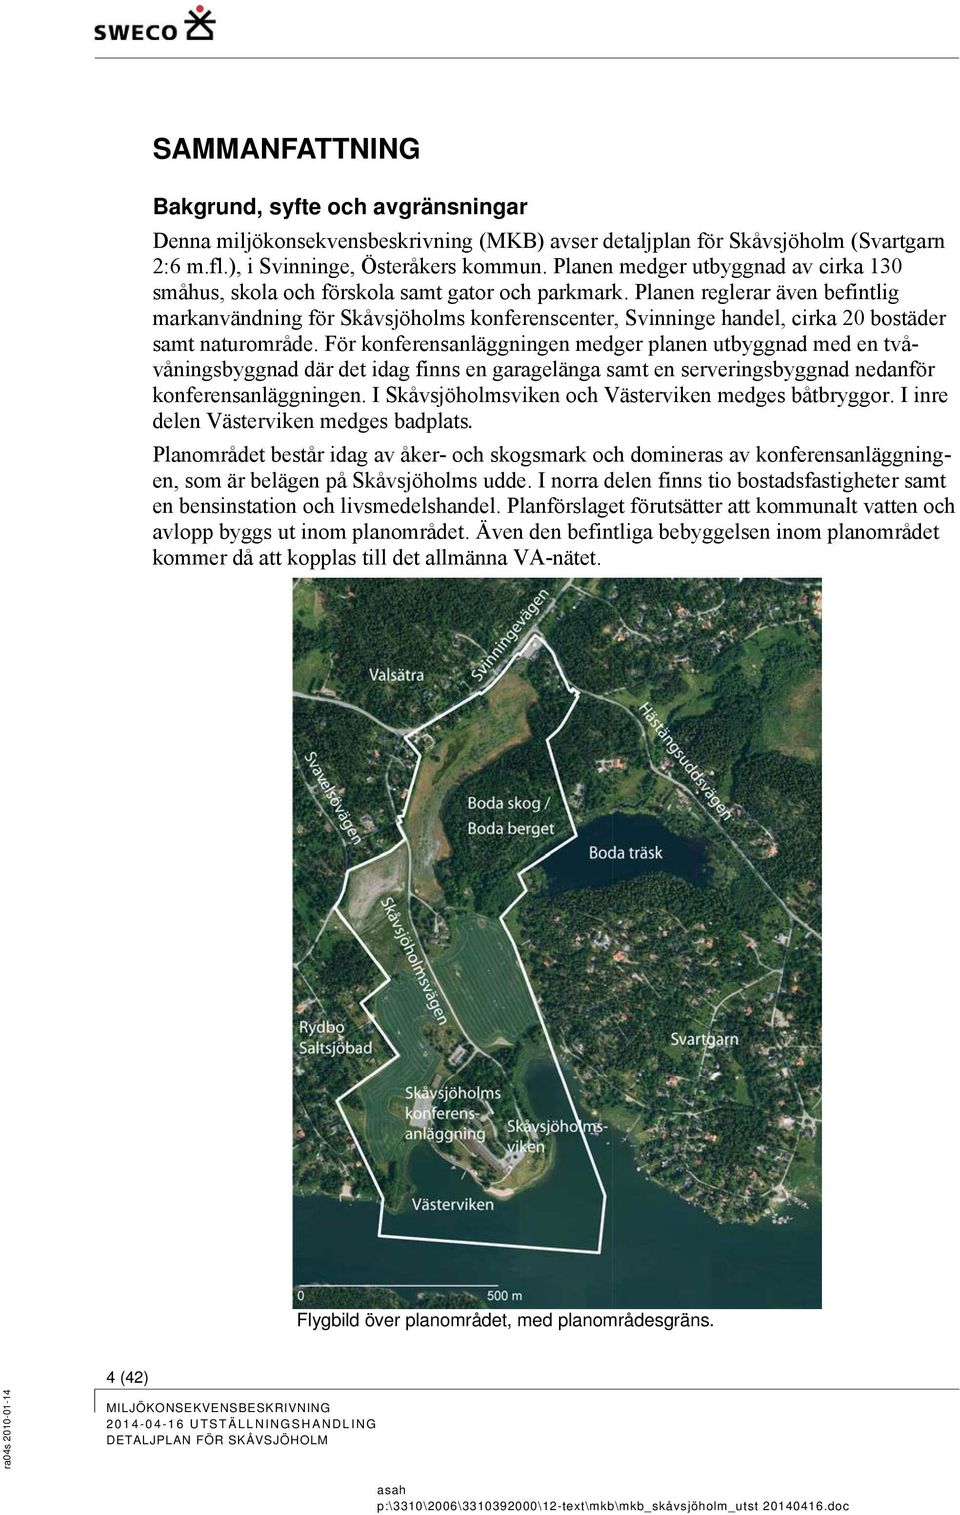 Planen reglerar även befintlig markanvändning för Skåvsjöholms konferenscenter, Svinninge handel, cirka 20 bostäder samt naturområde.